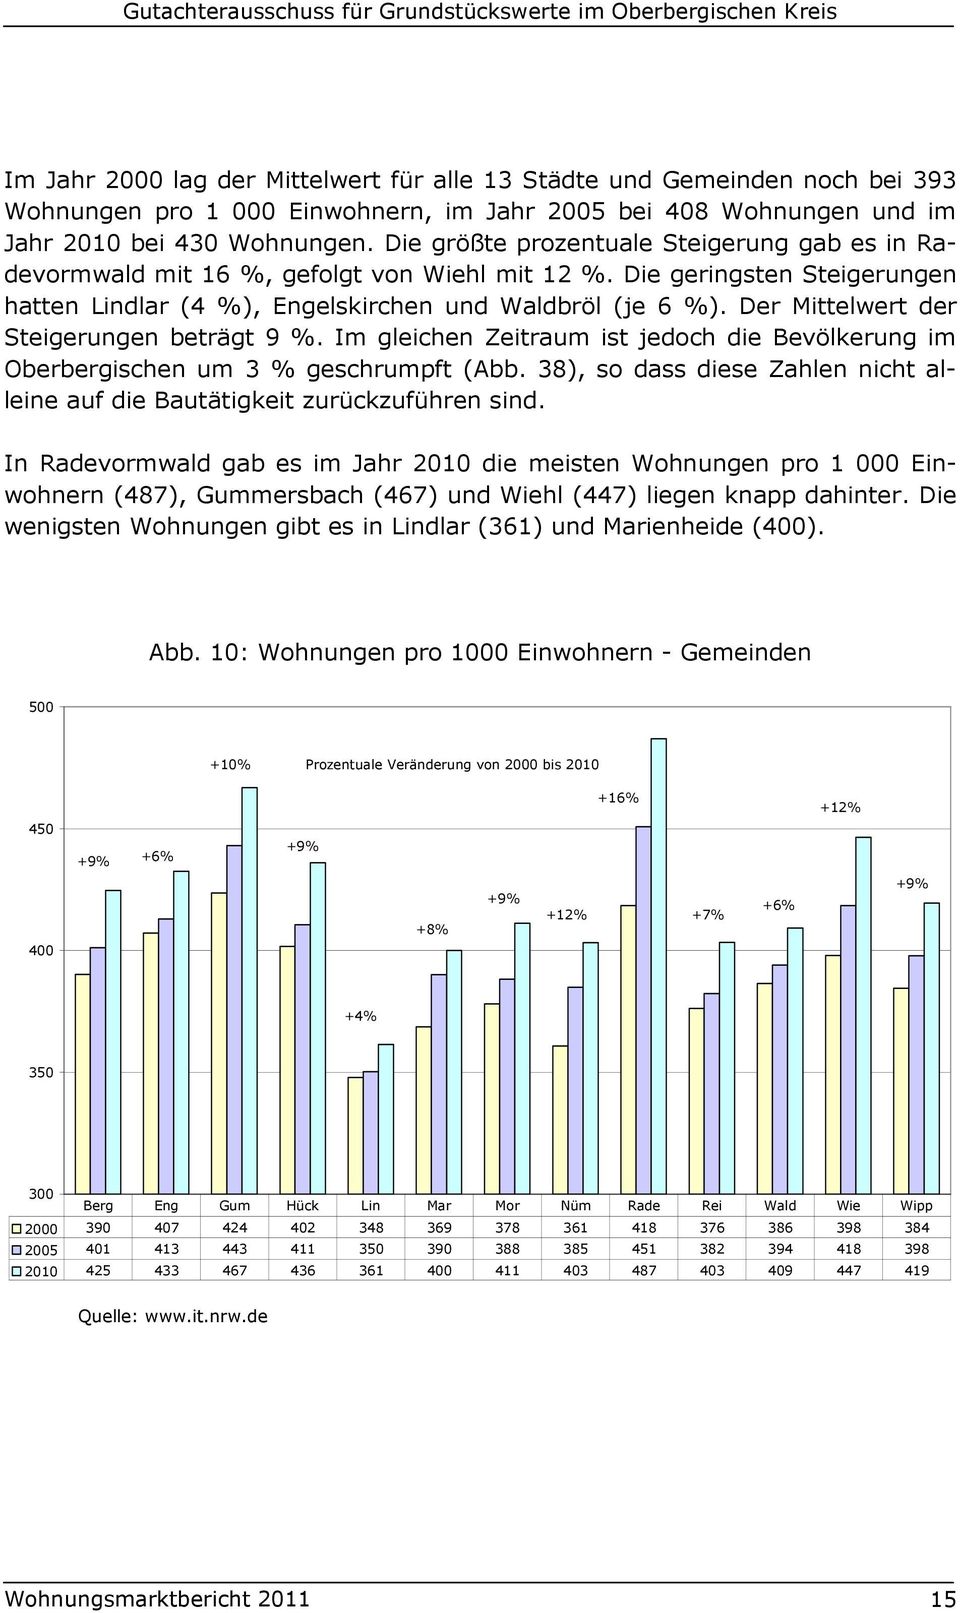 Die geringsten Steigerungen hatten Lindlar (4 %), Engelskirchen und Waldbröl (je 6 %). Der Mittelwert der Steigerungen beträgt 9 %.